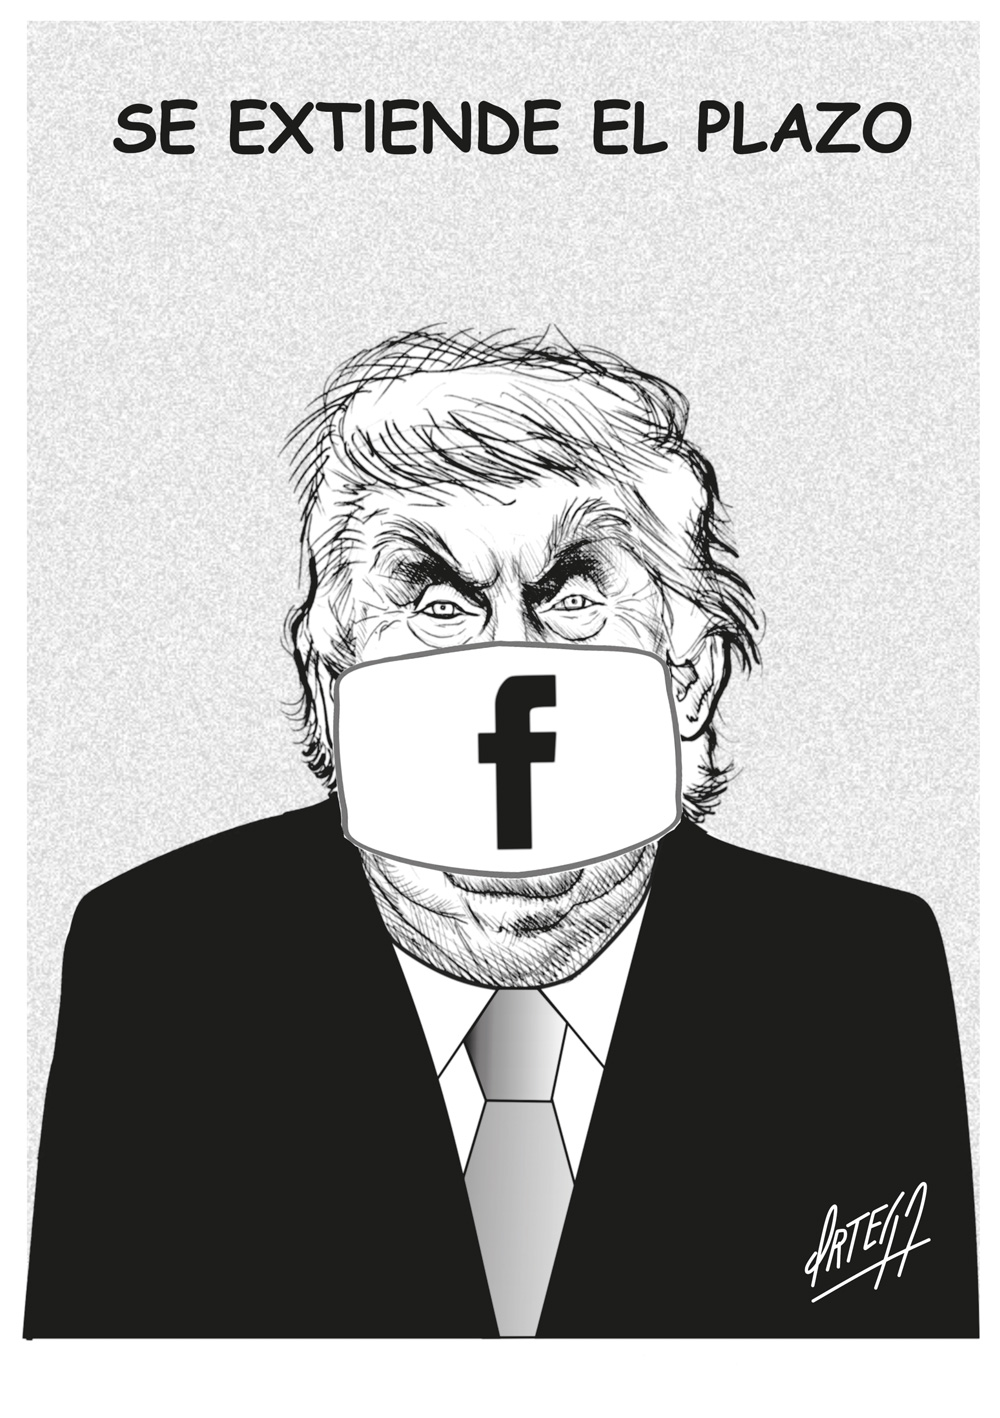 Facebook, Trump y los presidentes mentirosos